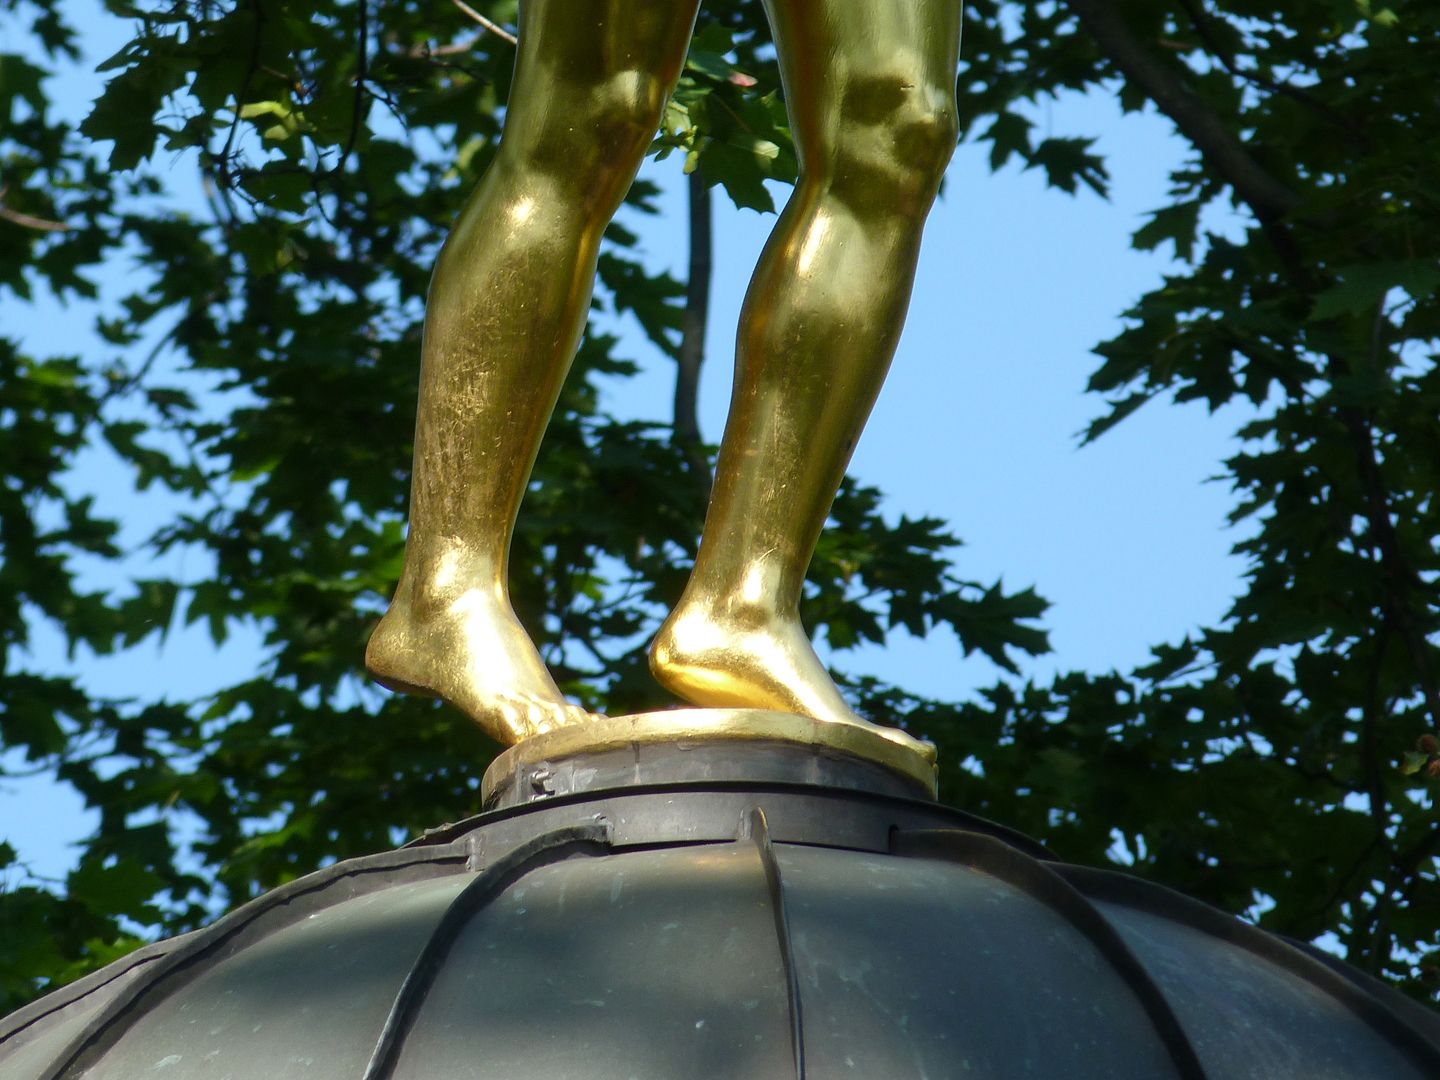 Fortuna on the lantern Detailansicht mit Standbeinen auf der Laterne